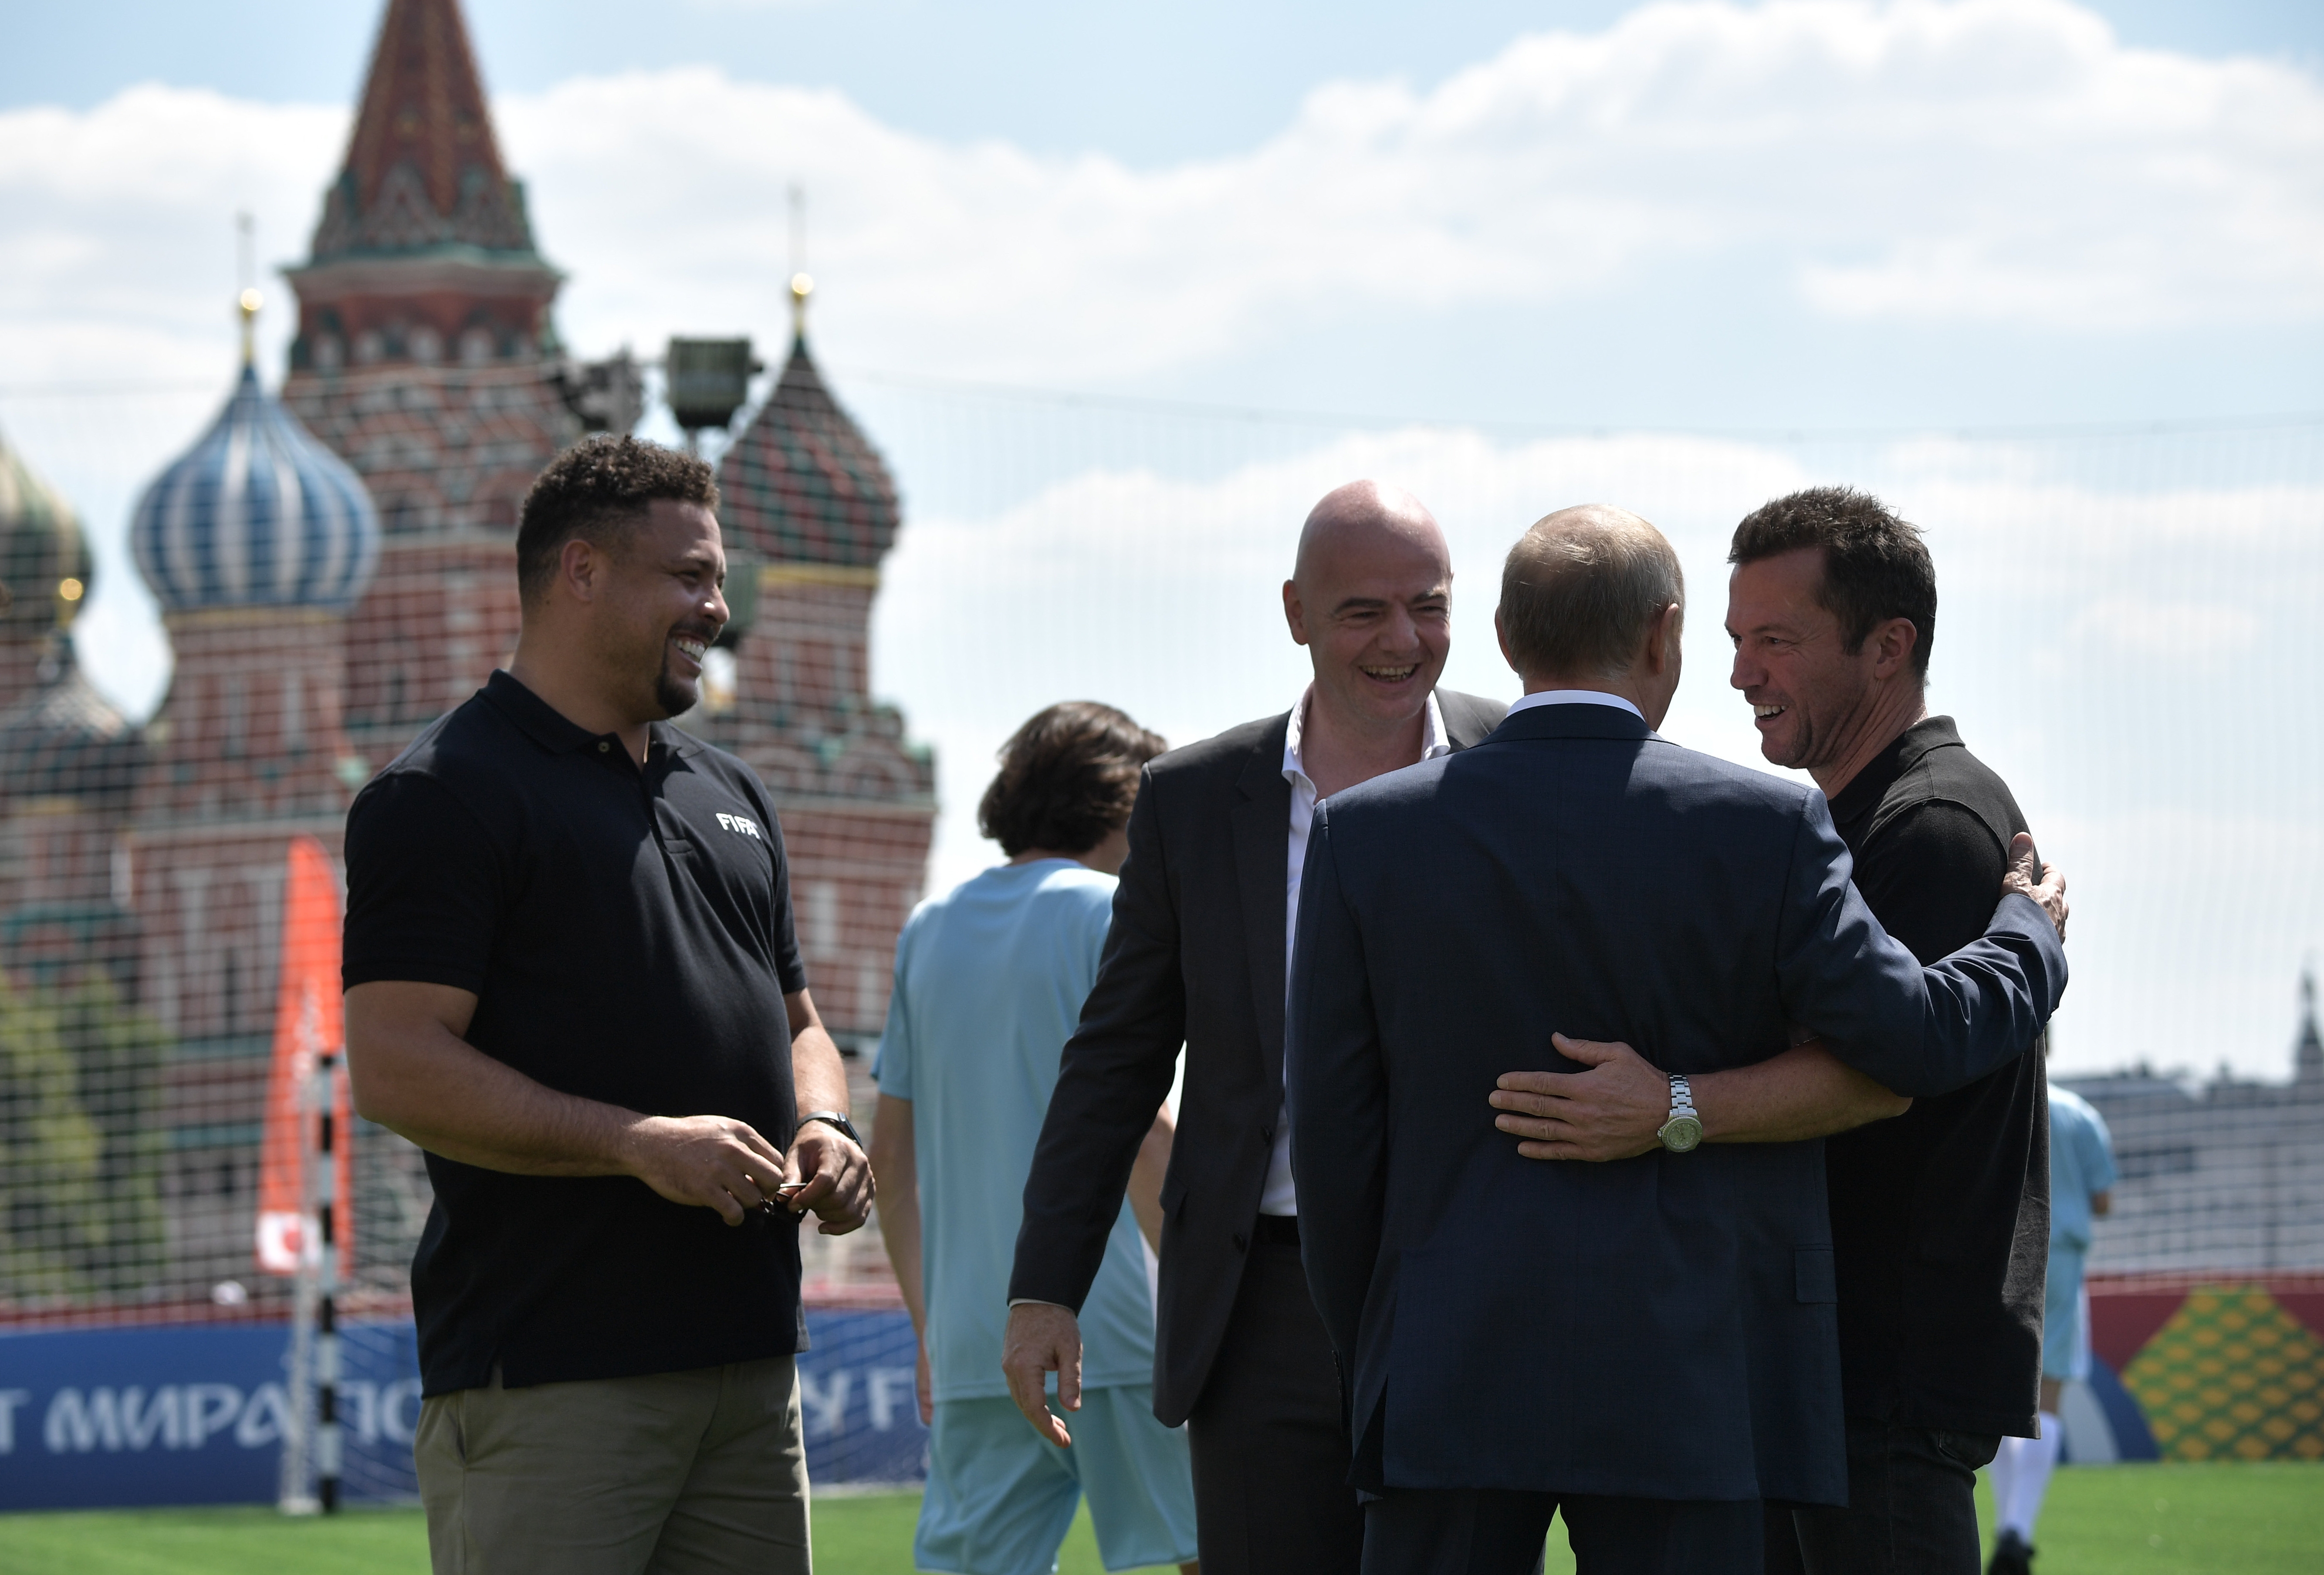 Az megvan, amikor Putyin, Ronaldo, Matthäus és a FIFA elnöke elmegy egy gyerekfocimeccsre?